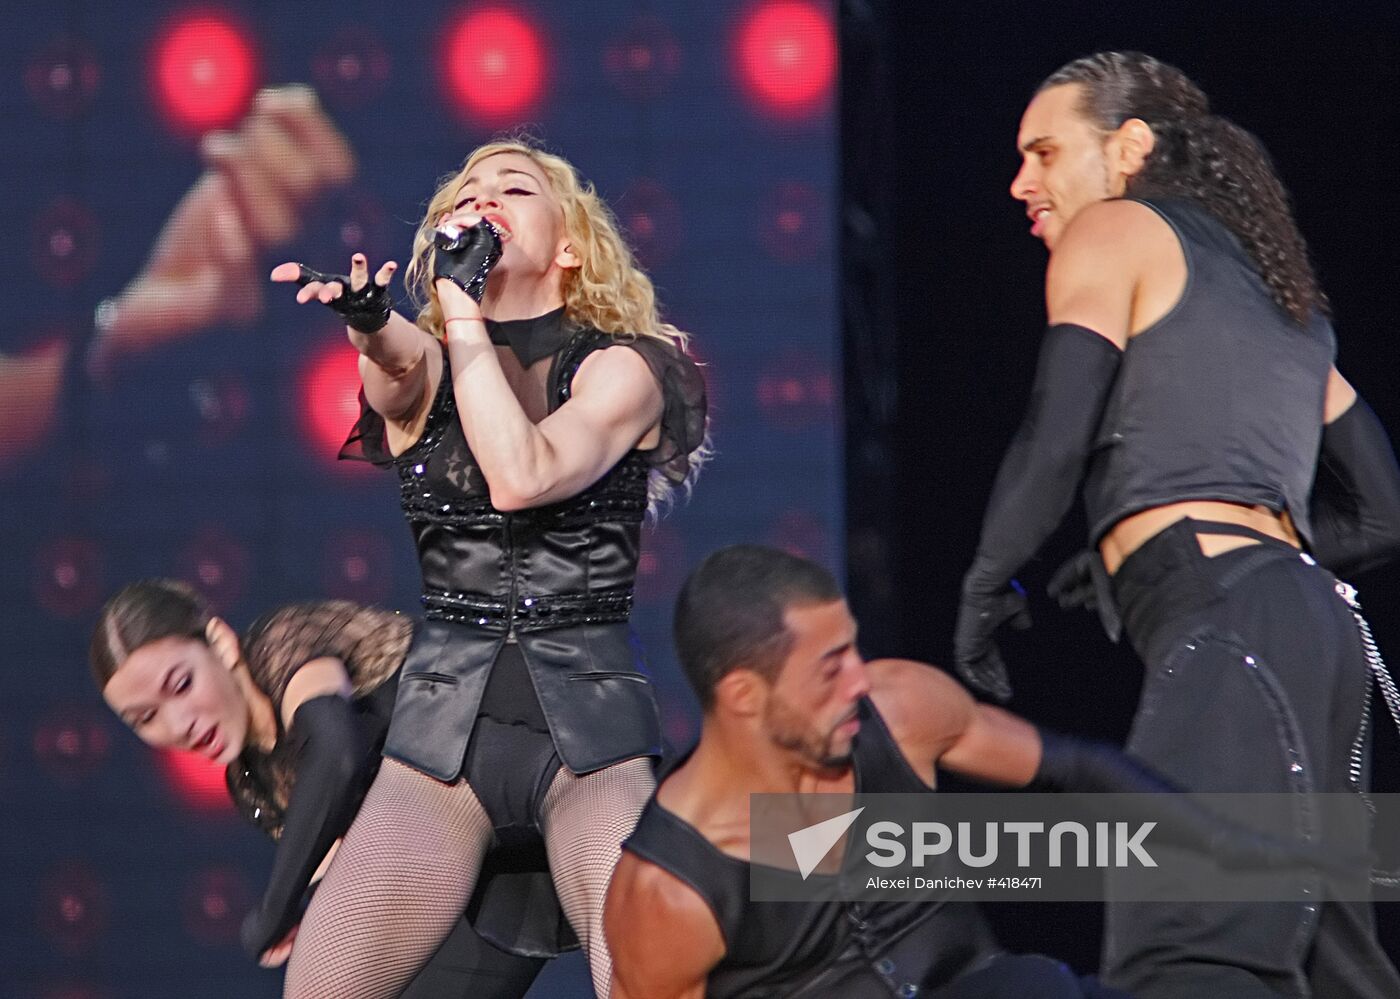 Madonna's concert in St. Petersburg